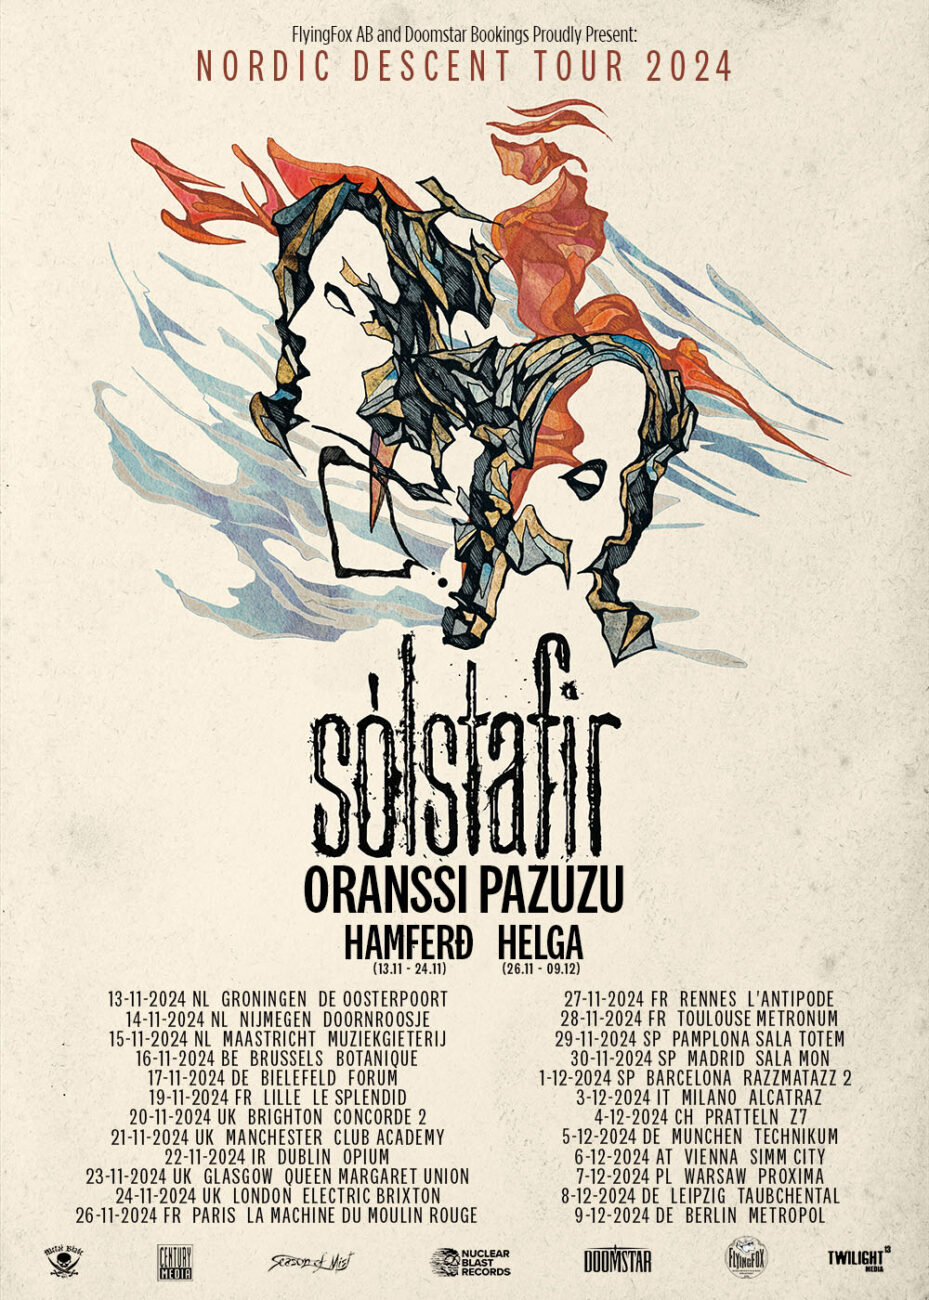 solstafir tour dates